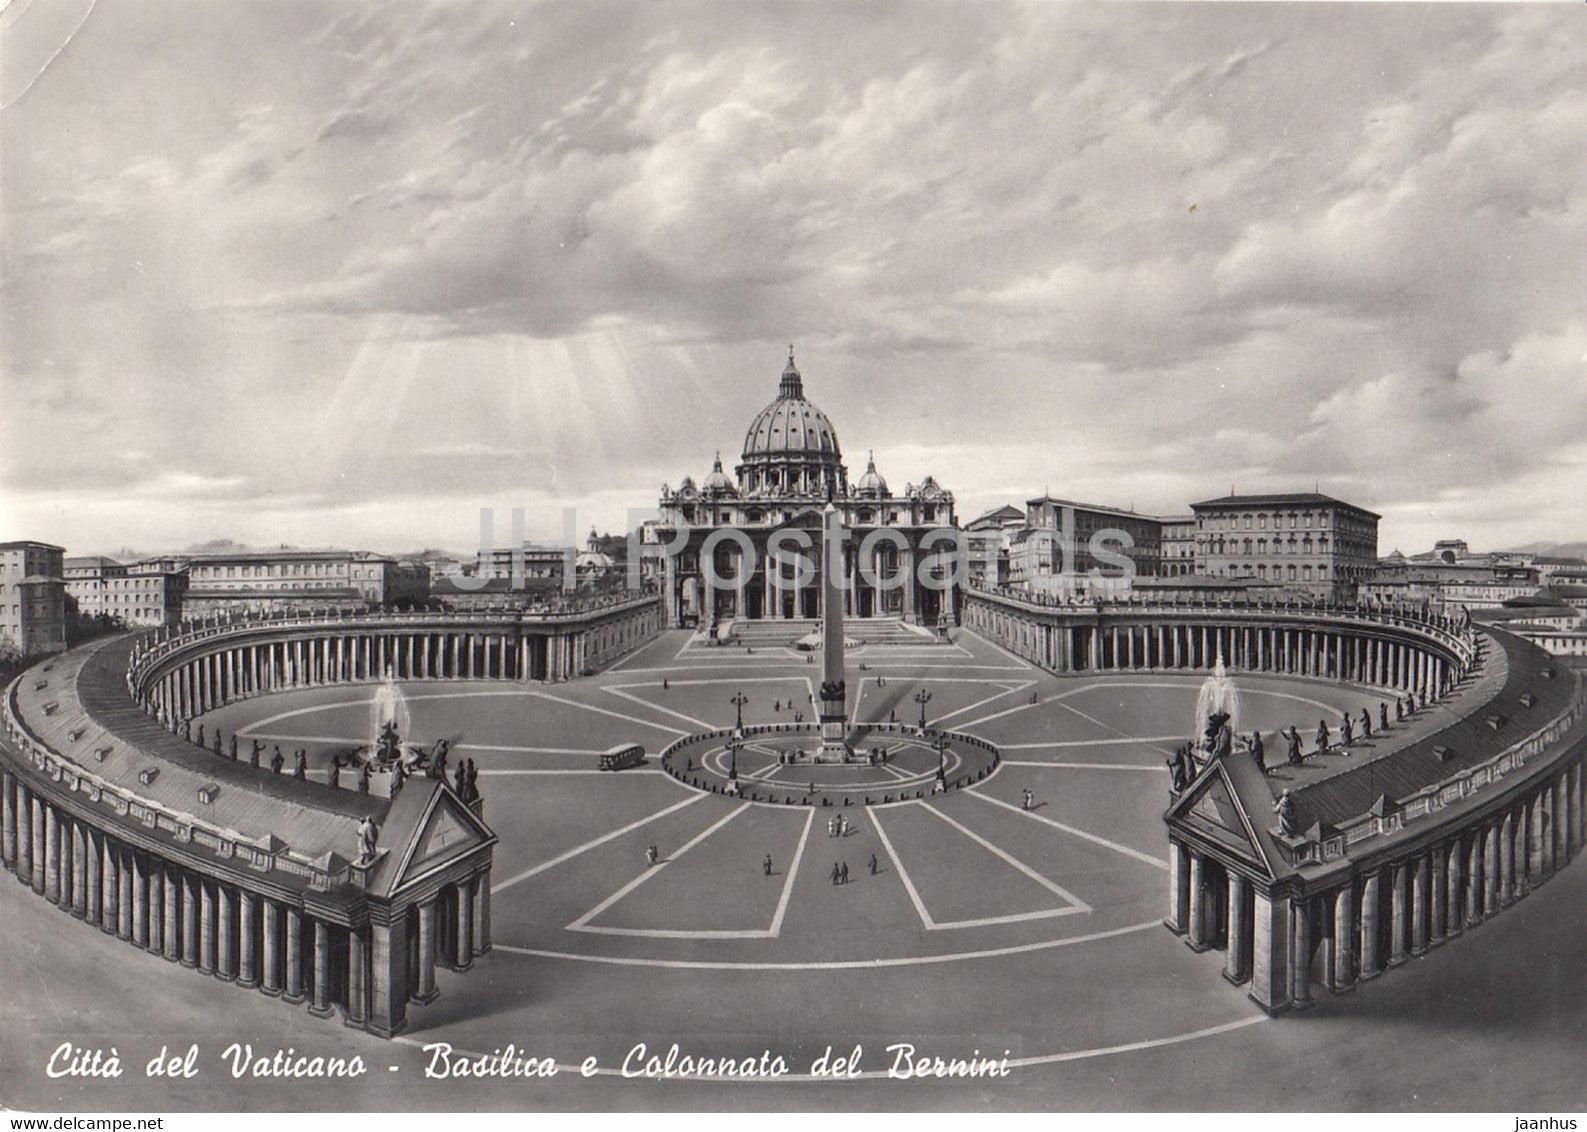 Citta del Vaticano - Basilica e Colonnato del Bernini - cathedral - colonnade - 1956 - old postcard - Vatican - used - JH Postcards